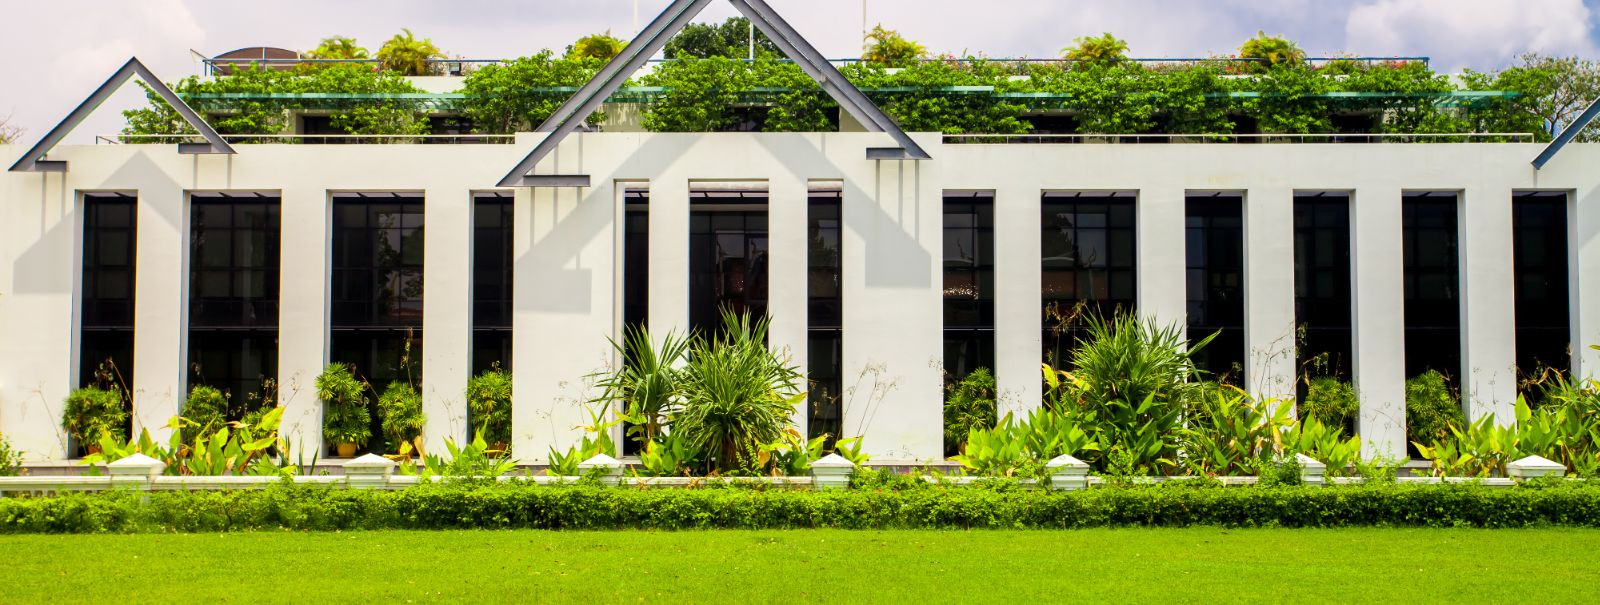 Murukatuste ehitus on roheline katusesüsteem, mis koosneb katusealusest konstruktsioonist, drenaažikihist, filtreerimiskihist, kasvumullast ja taimestikust. Mur